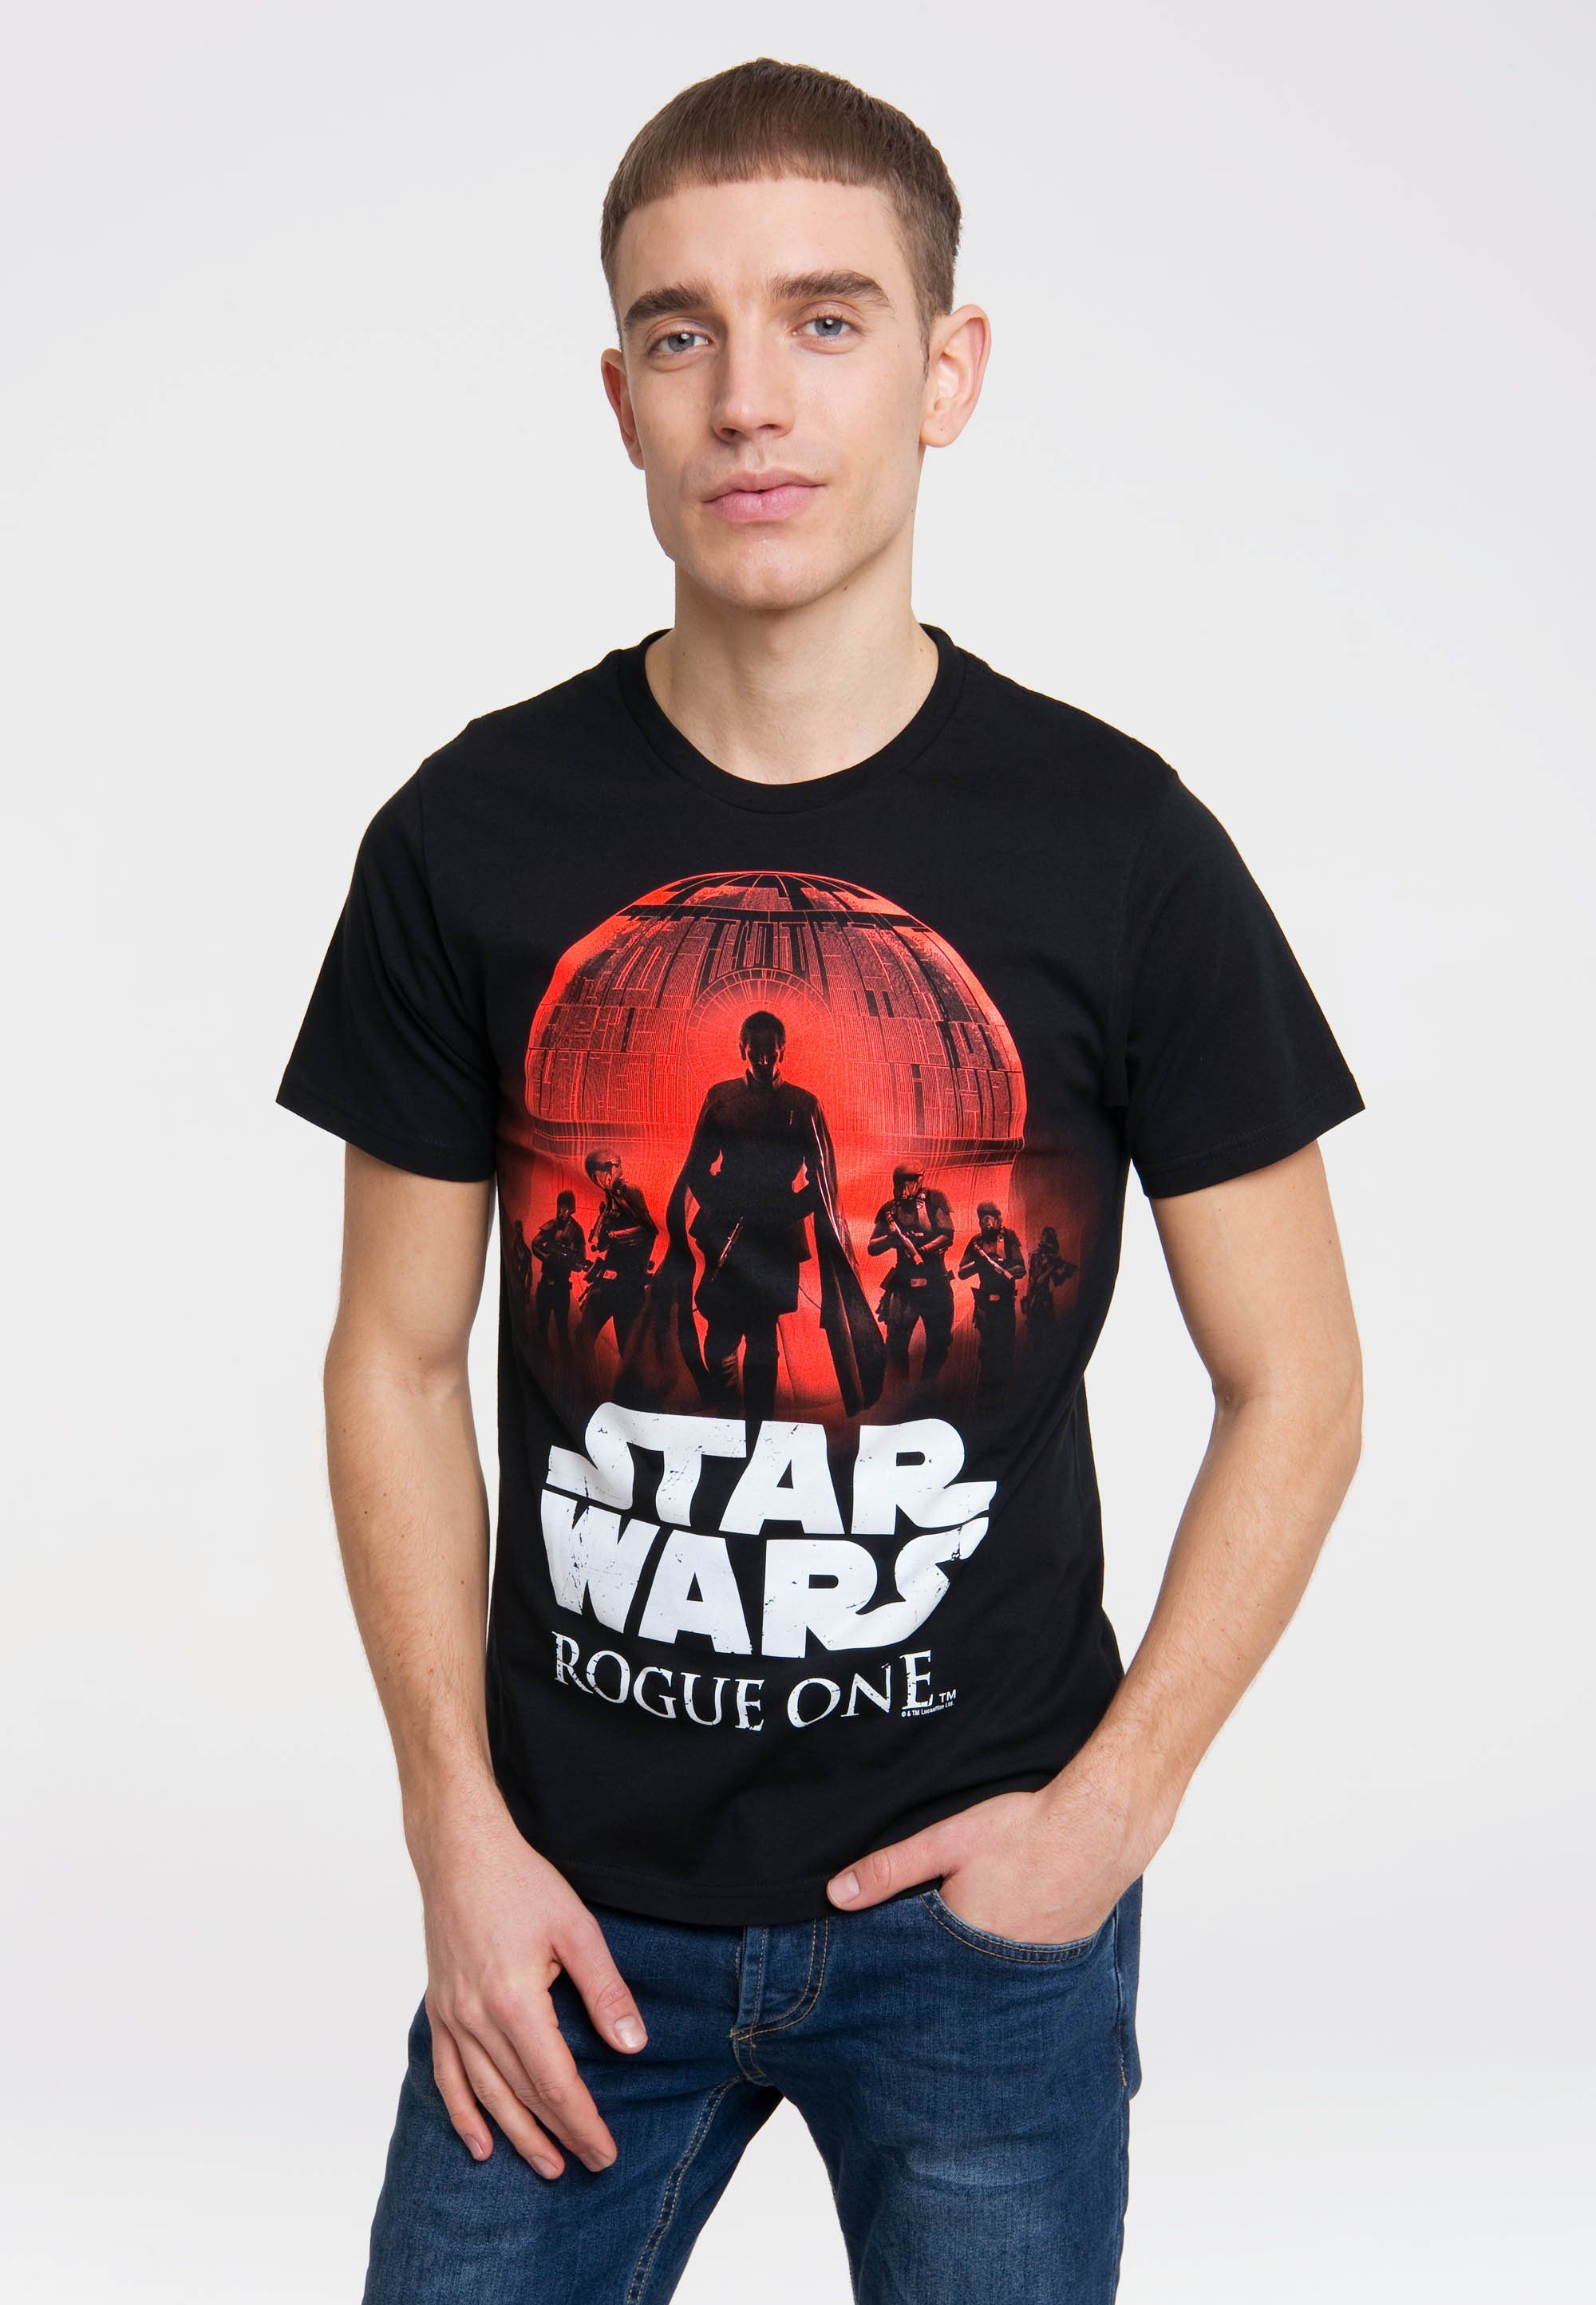 Rogue Wars T-Shirt - LOGOSHIRT Star mit Star Wars-Frontdruck One